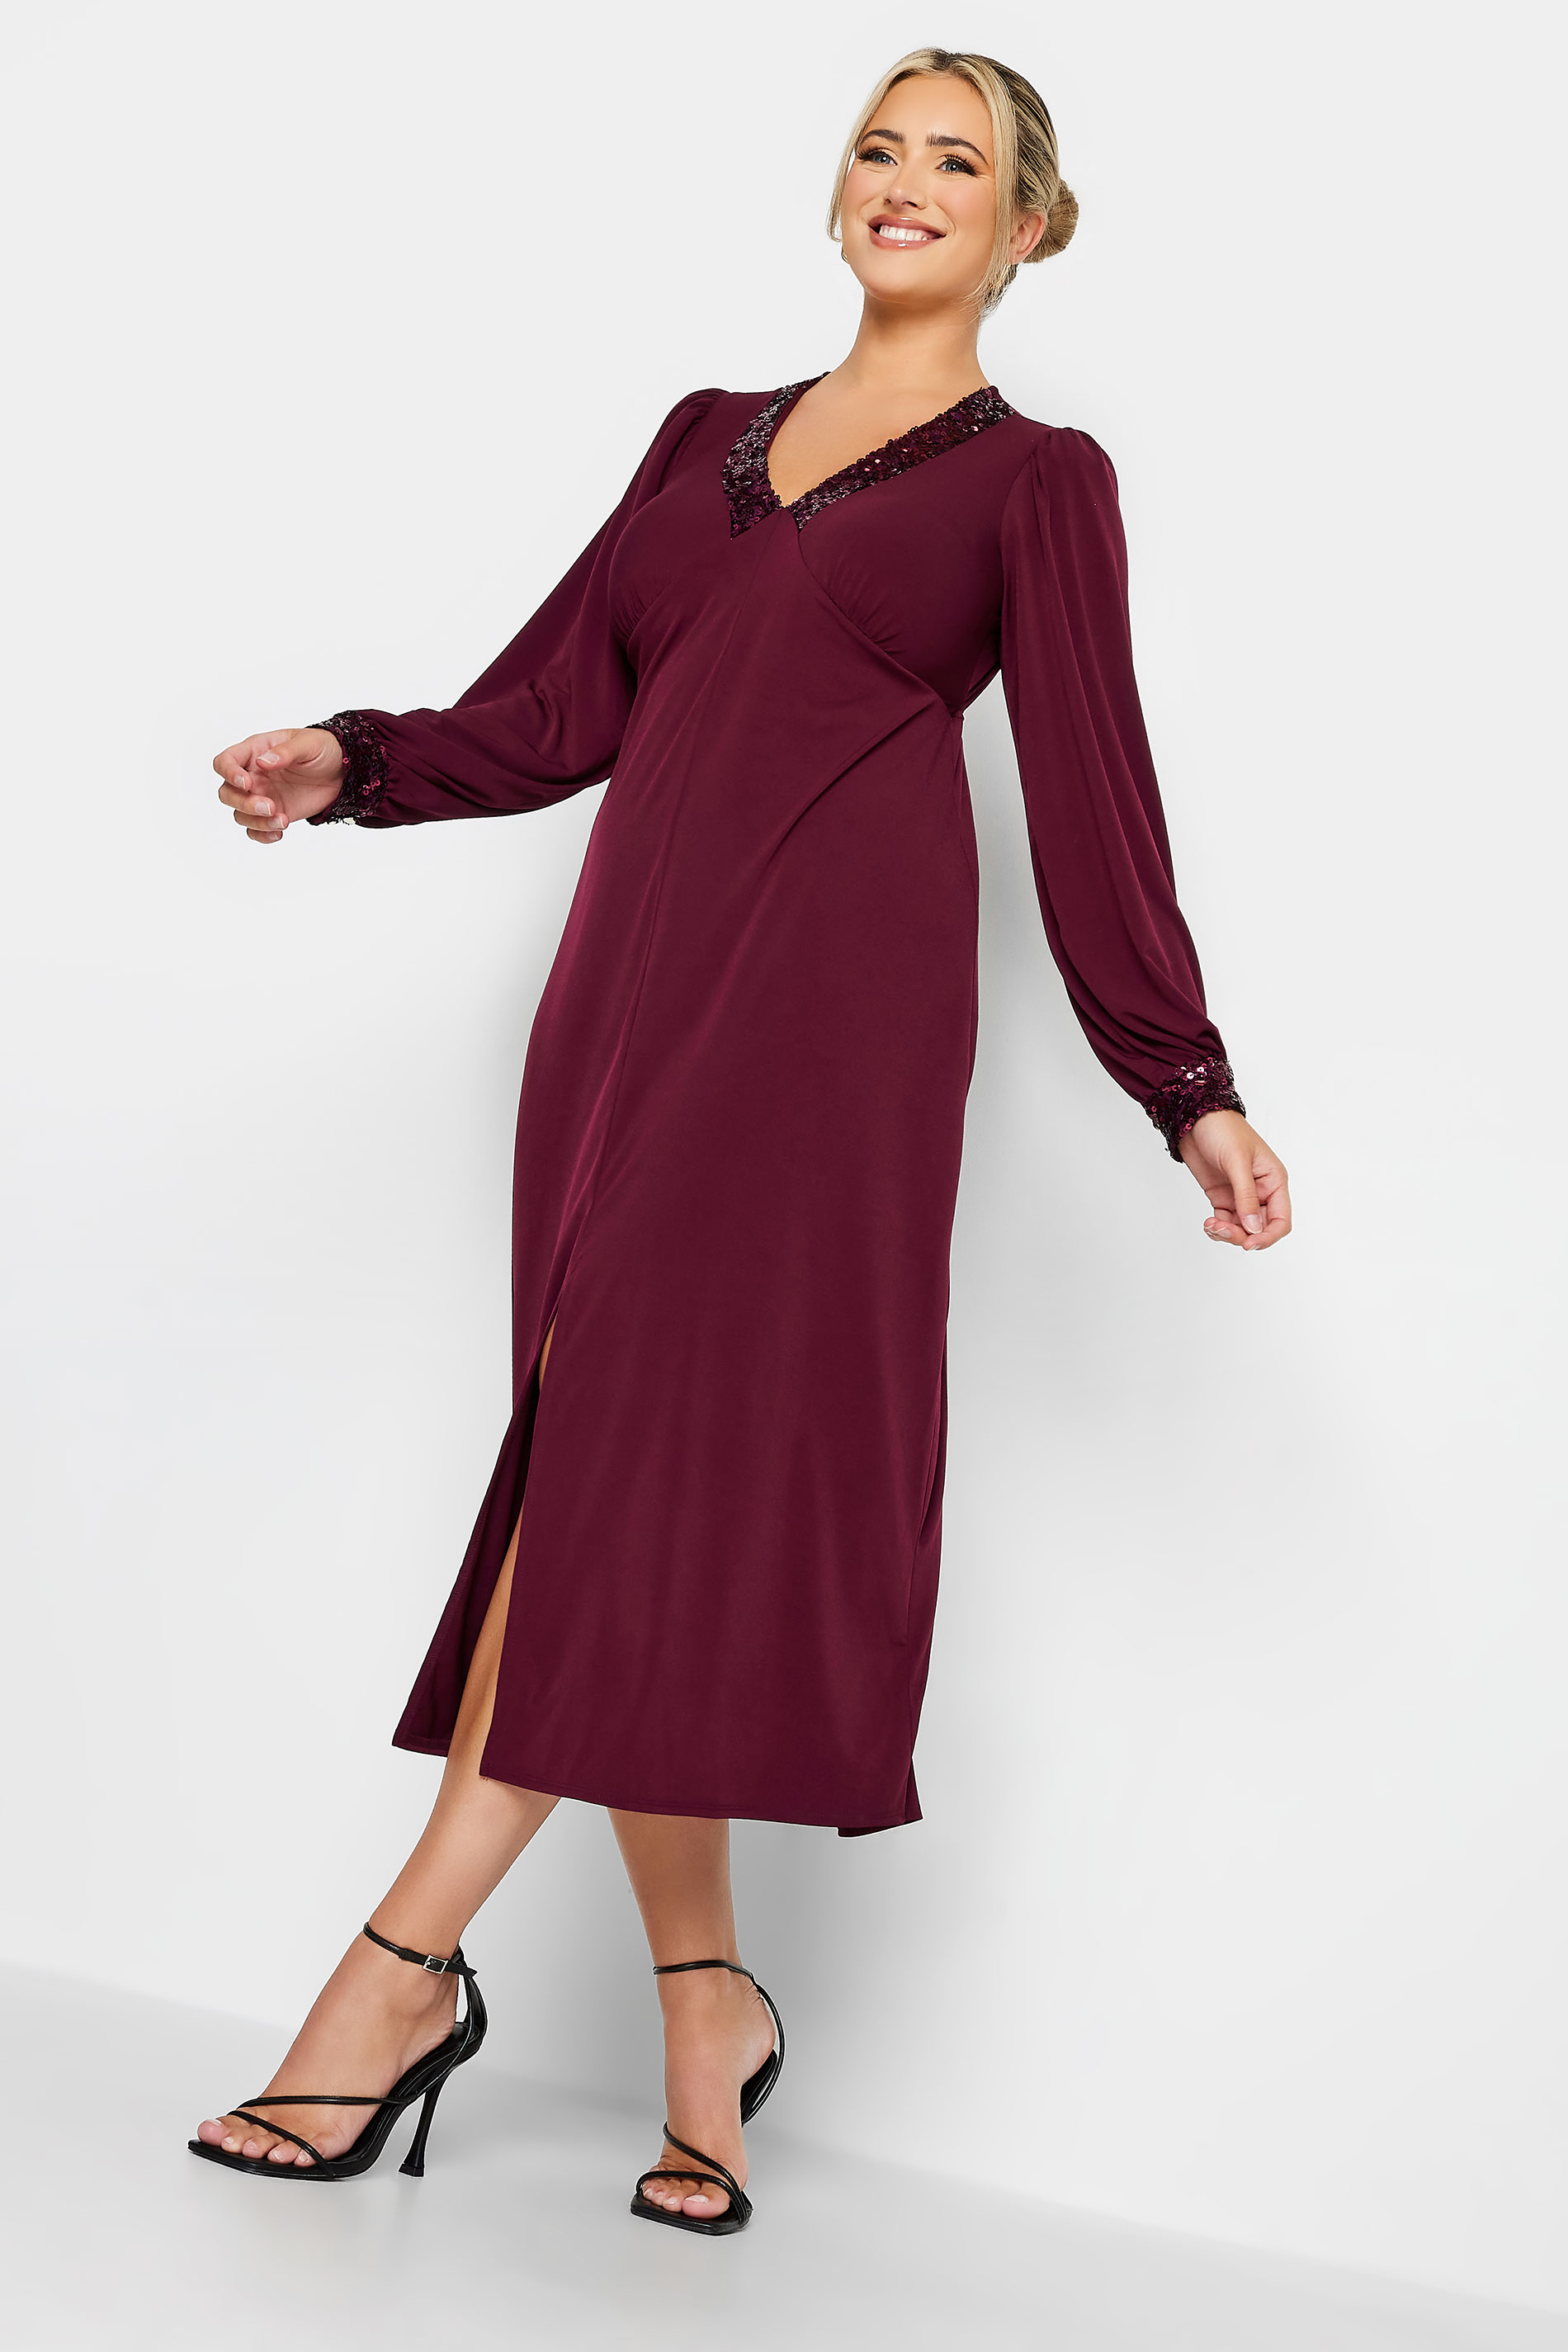 YOURS LONDON Plus Size Plum Purple Sequin Split Front Dress | Yours Clothing 2